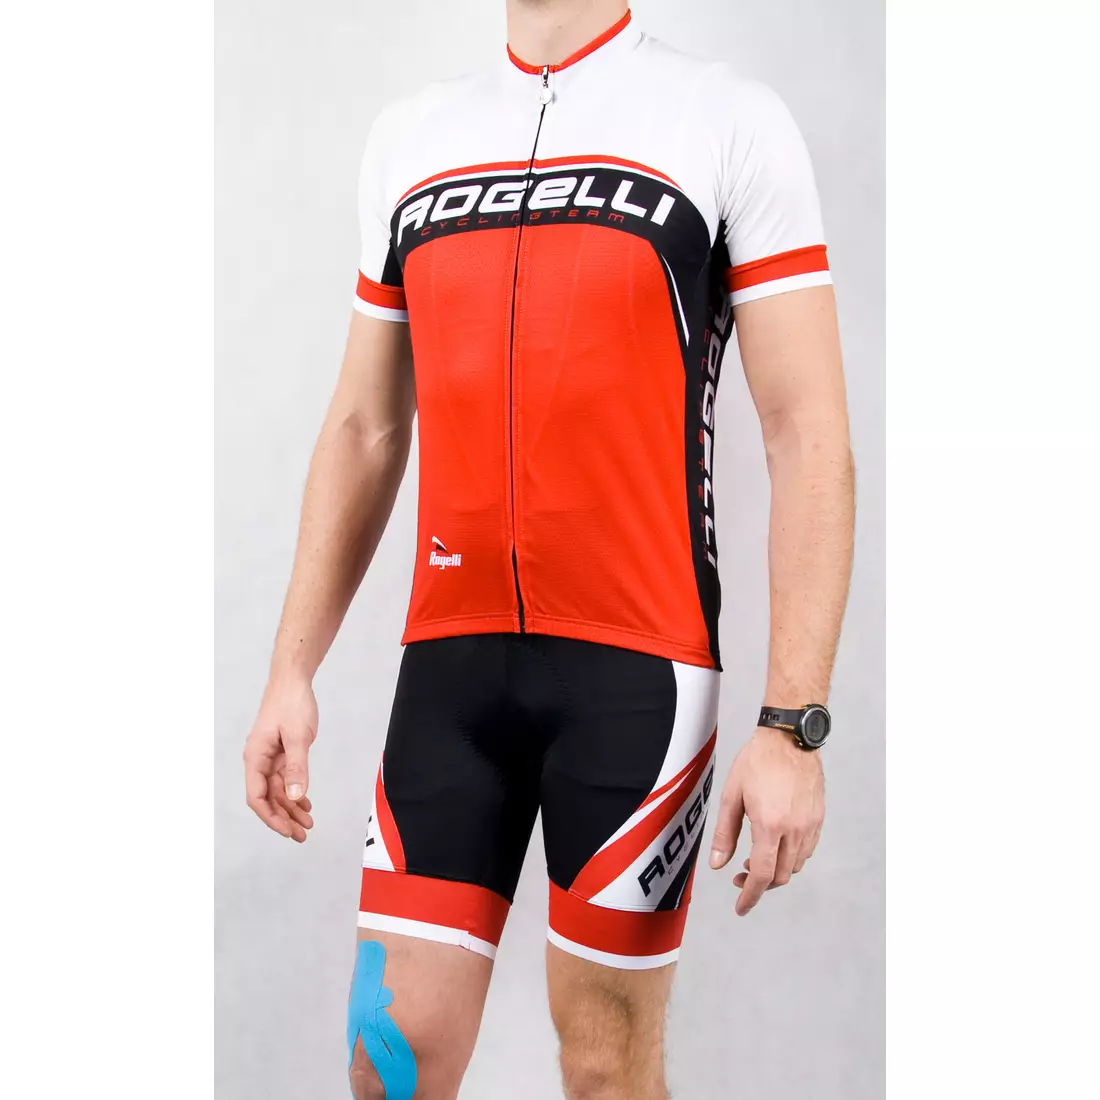 ROGELLI ANCONA - pánsky cyklistický dres, bielo-červený